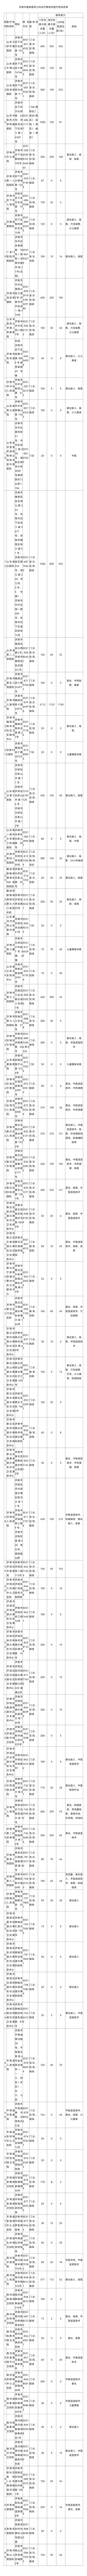 济南市公布能够提供儿科诊疗服务的医疗机构名单